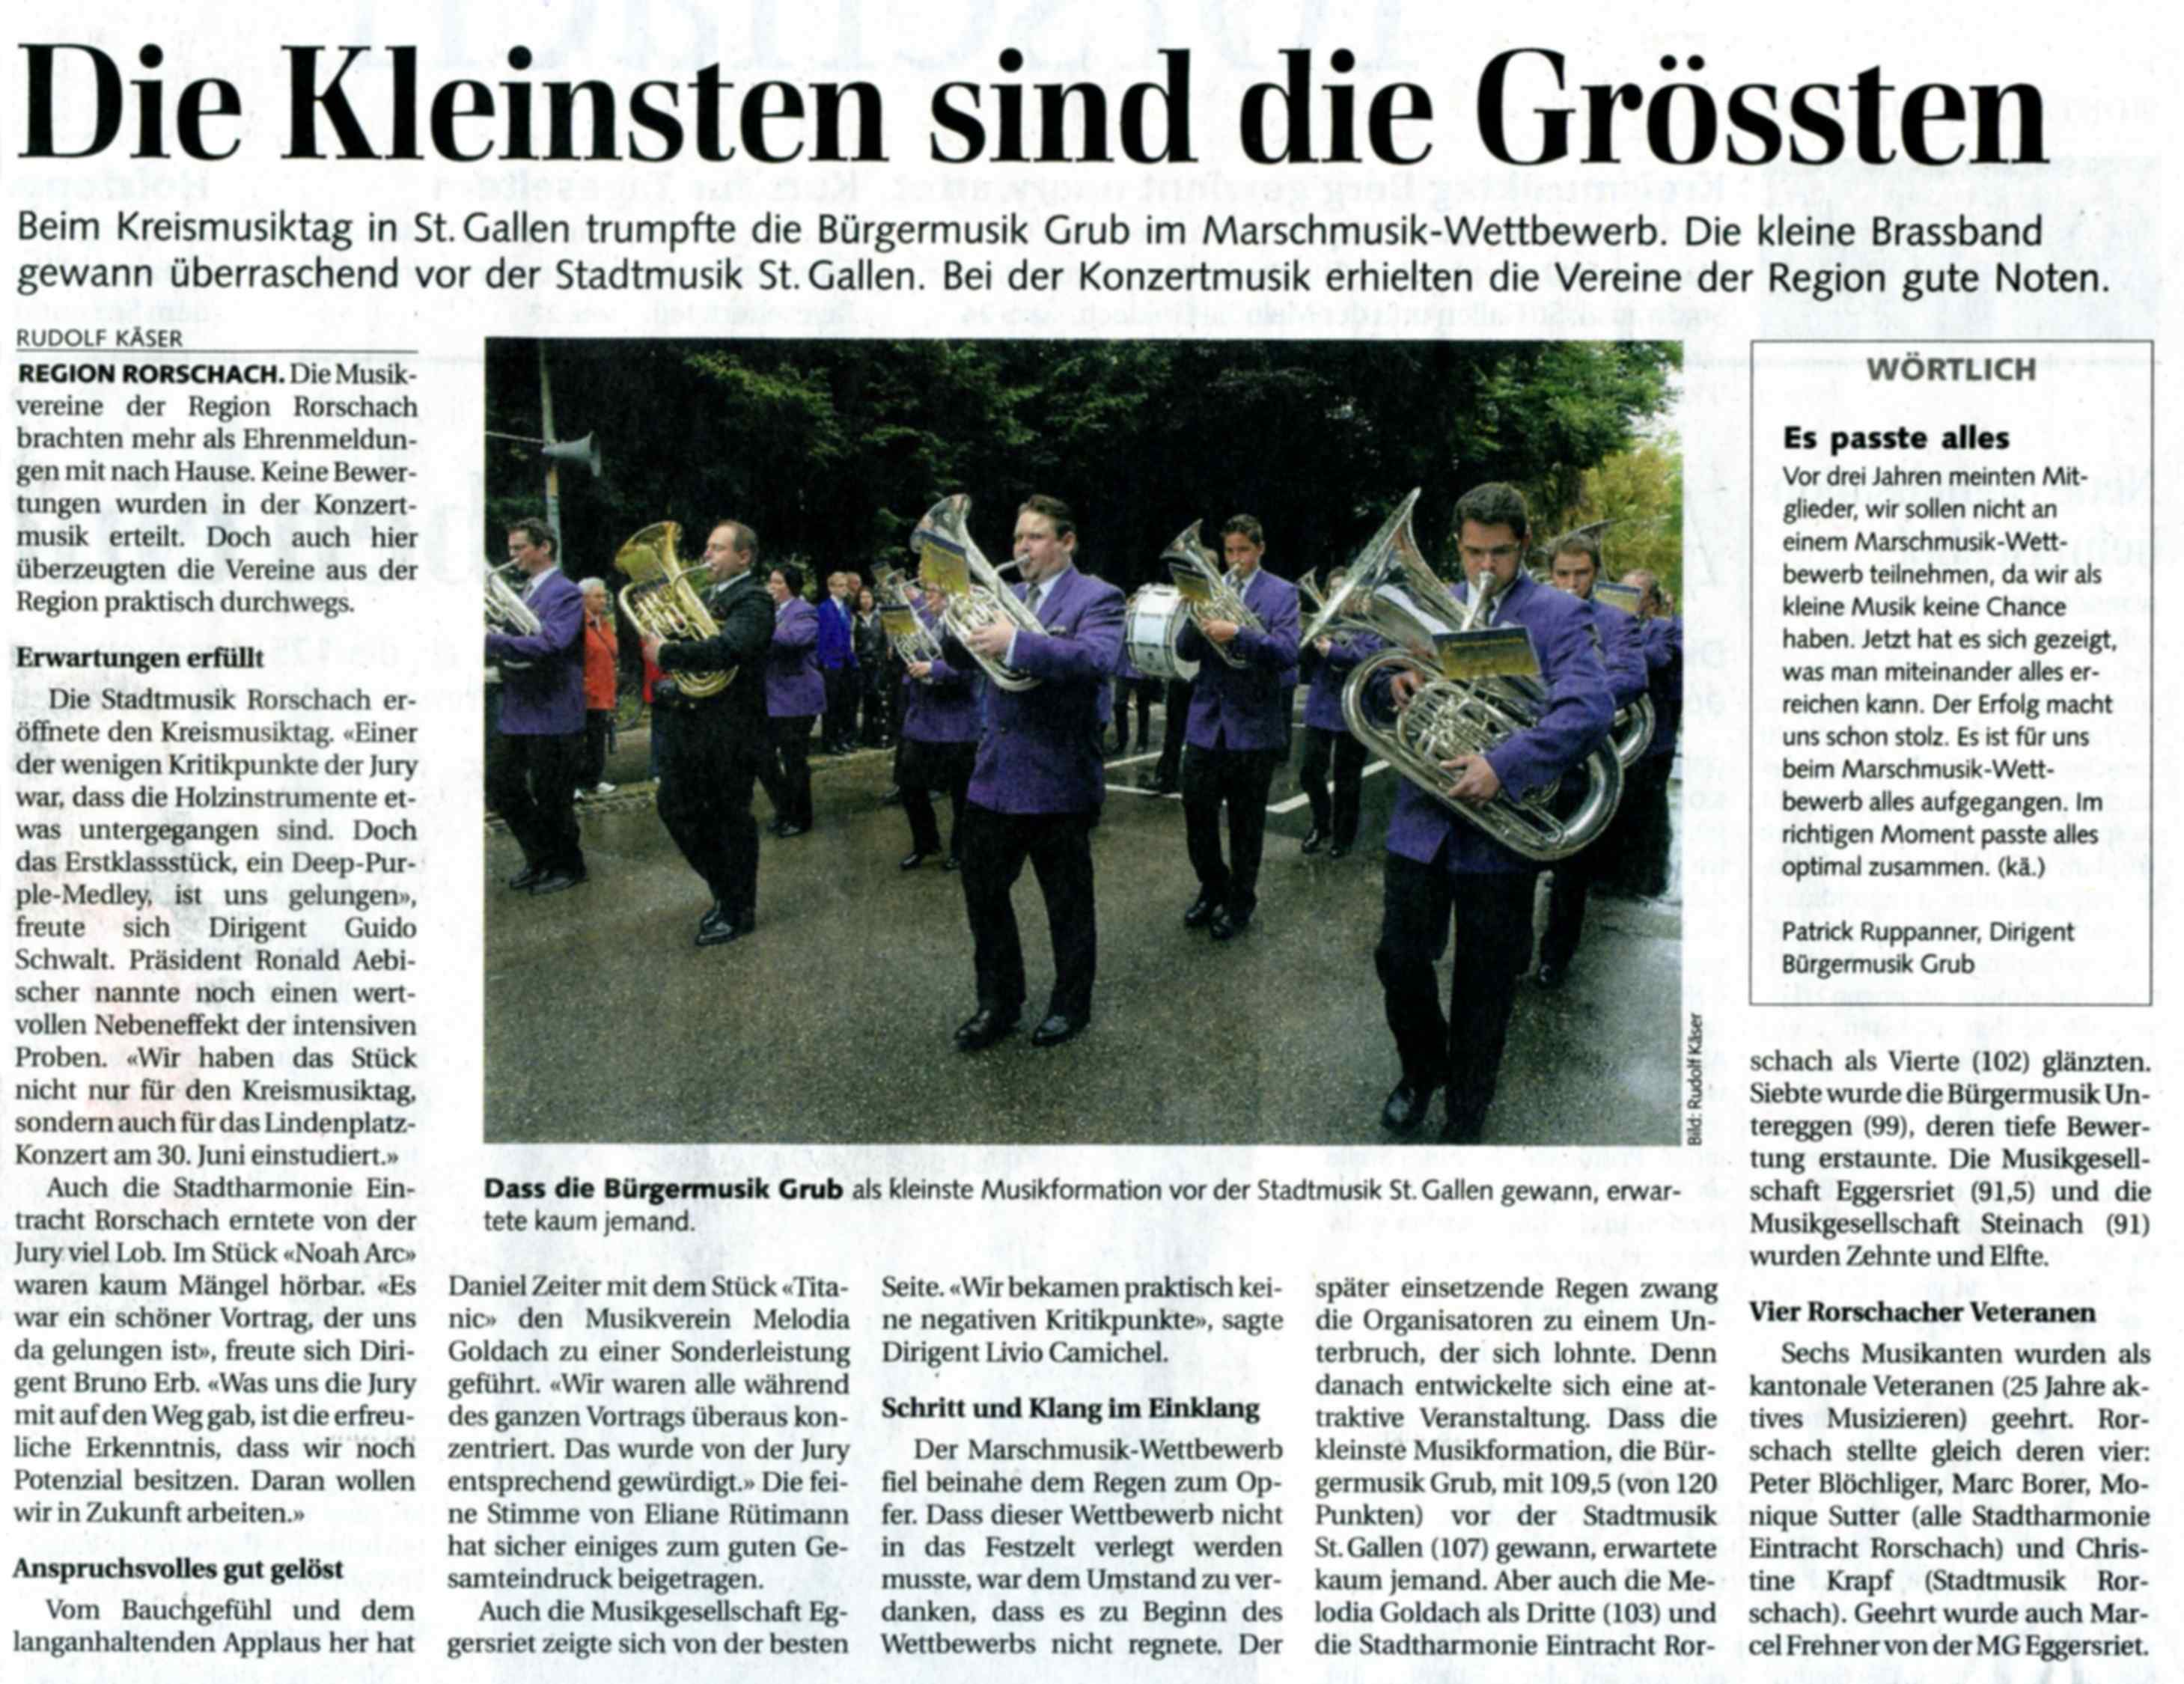 Bericht und Siegerbild am Kreismusiktag St. Gallen